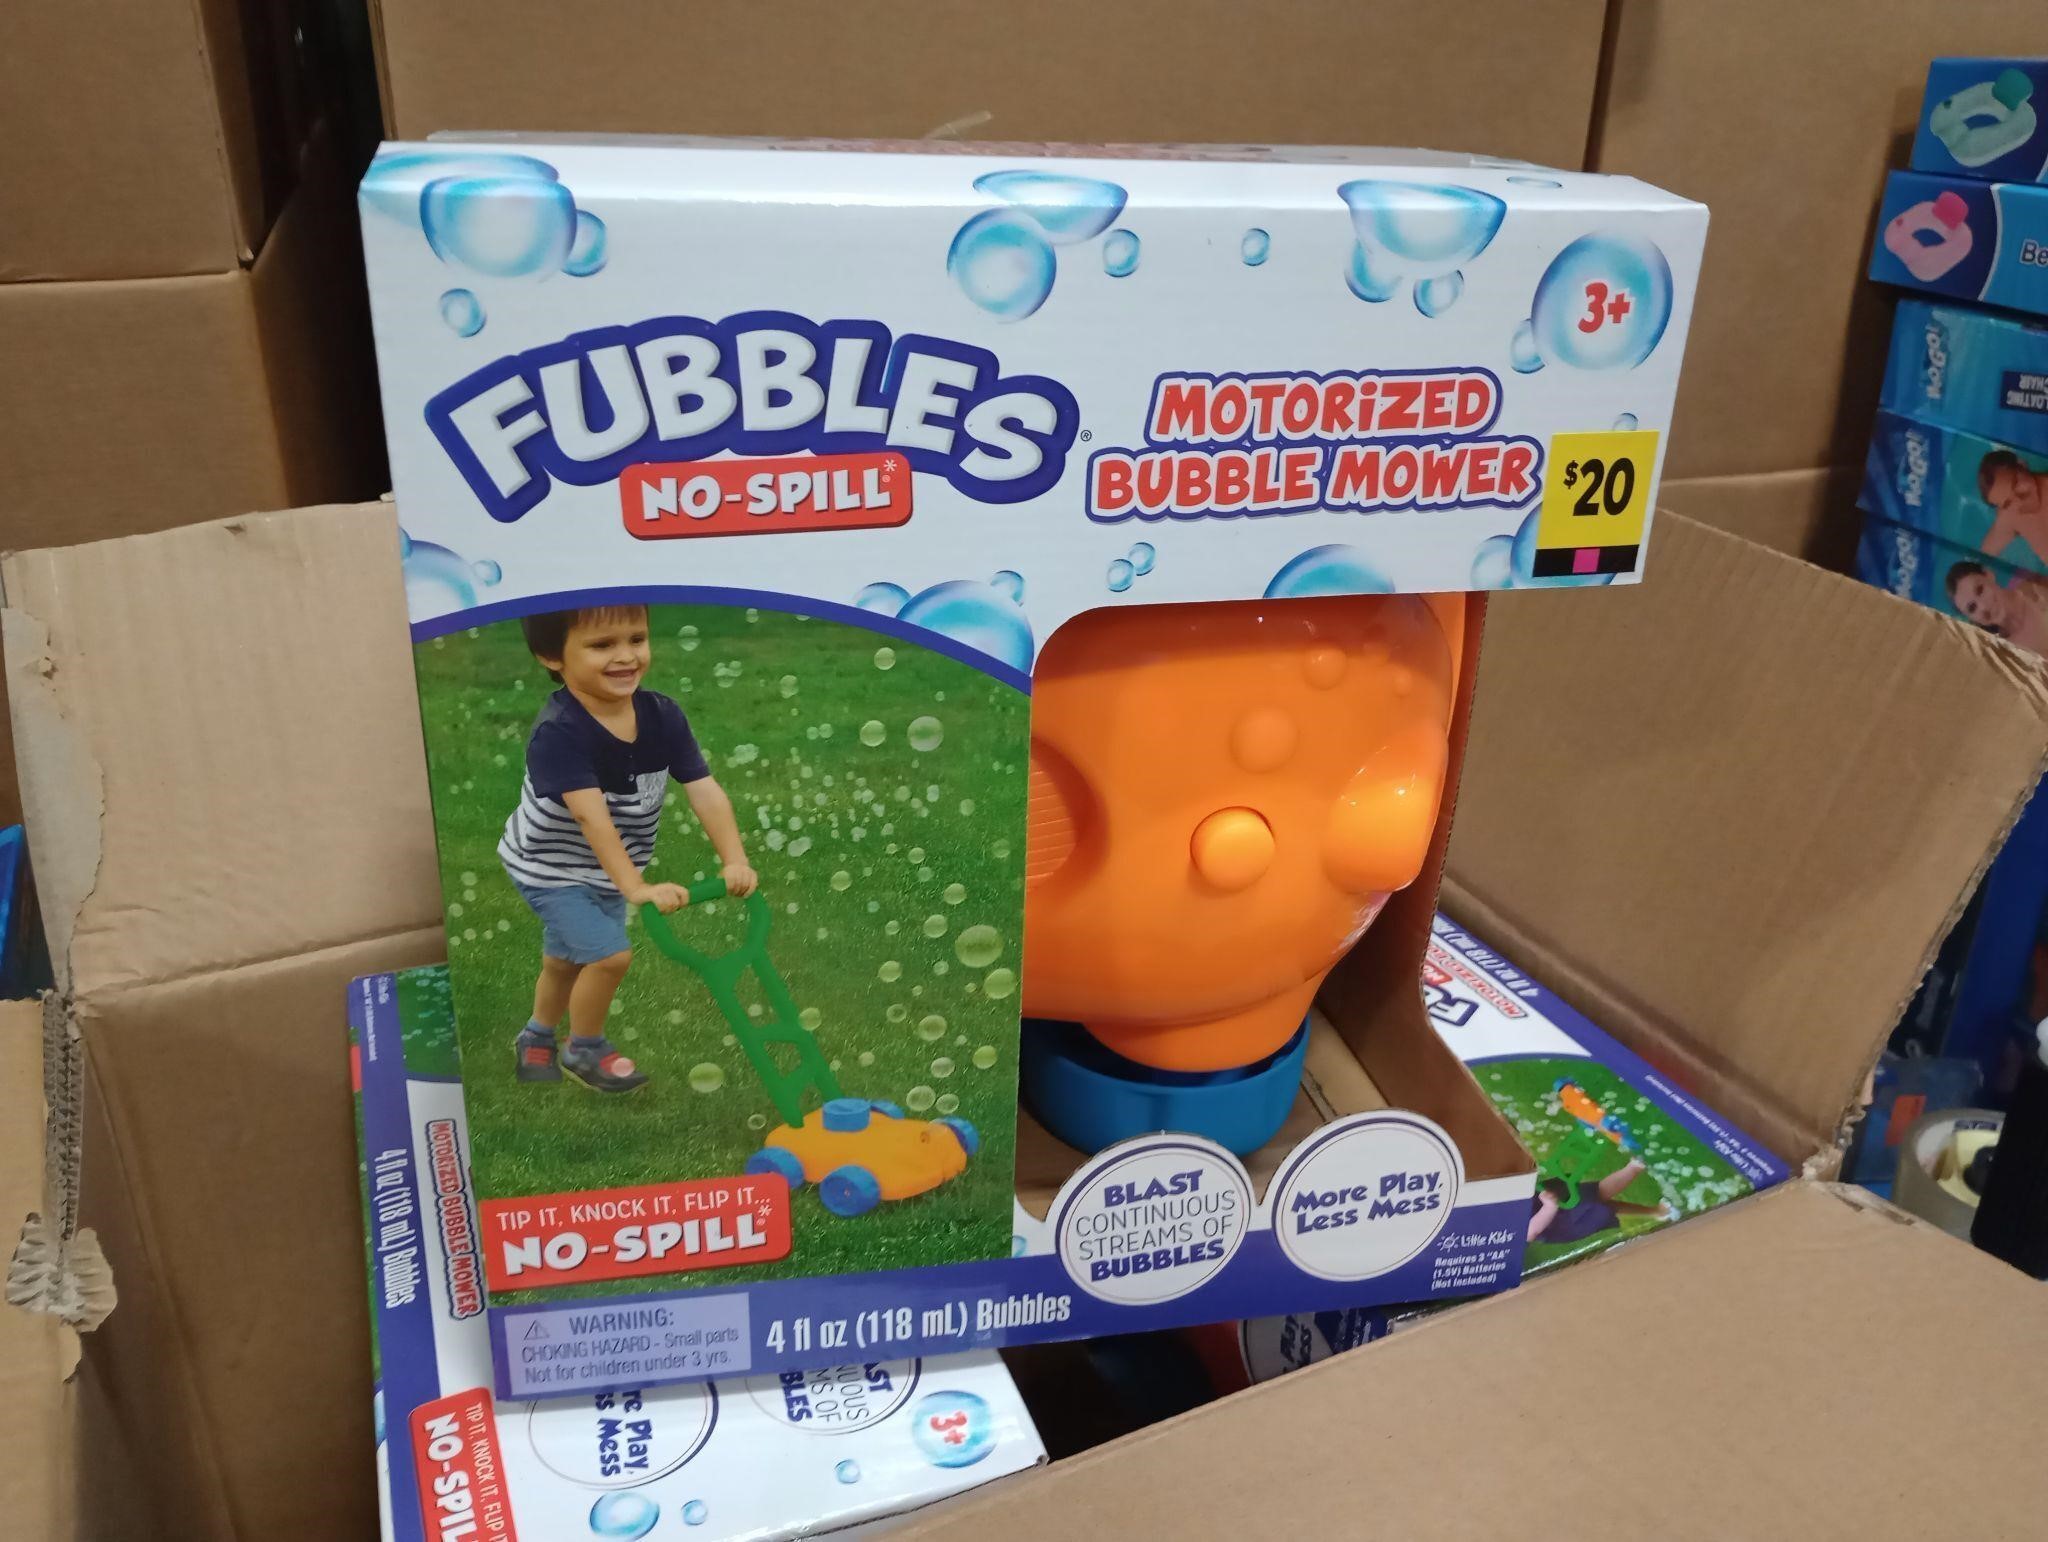 Fubbles motorized bubble mower